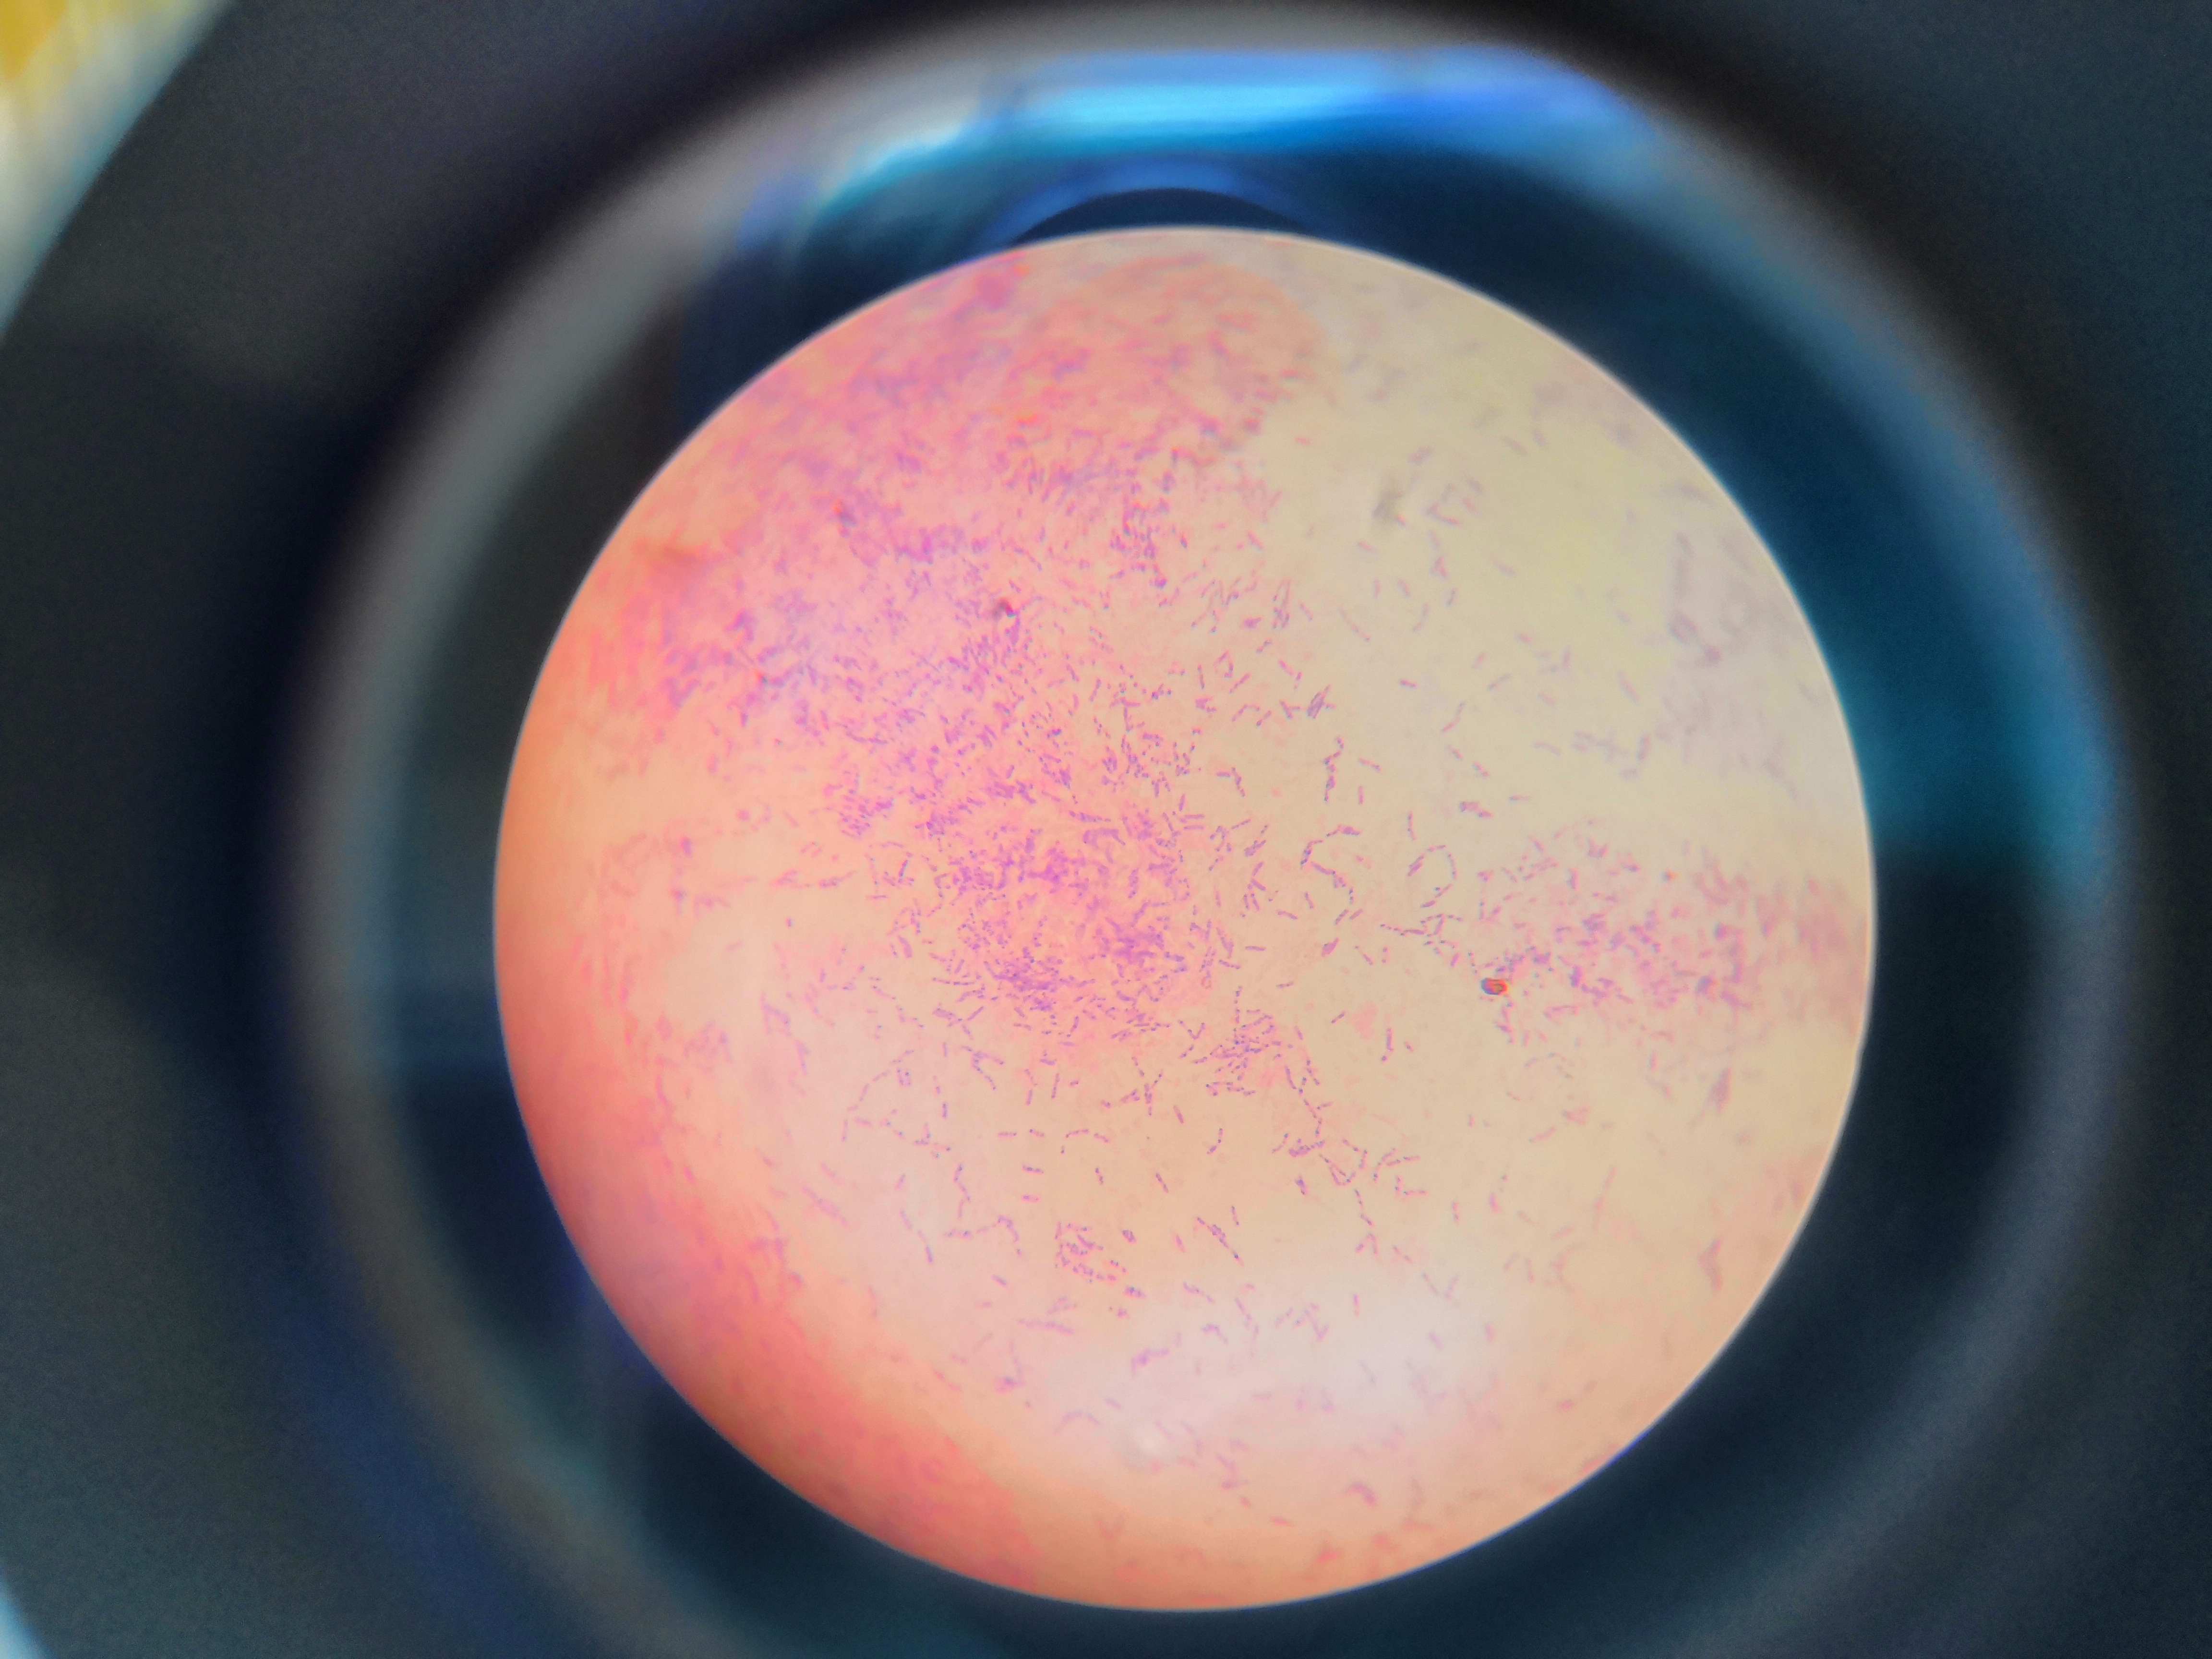 大肠杆菌的革兰氏染色图片